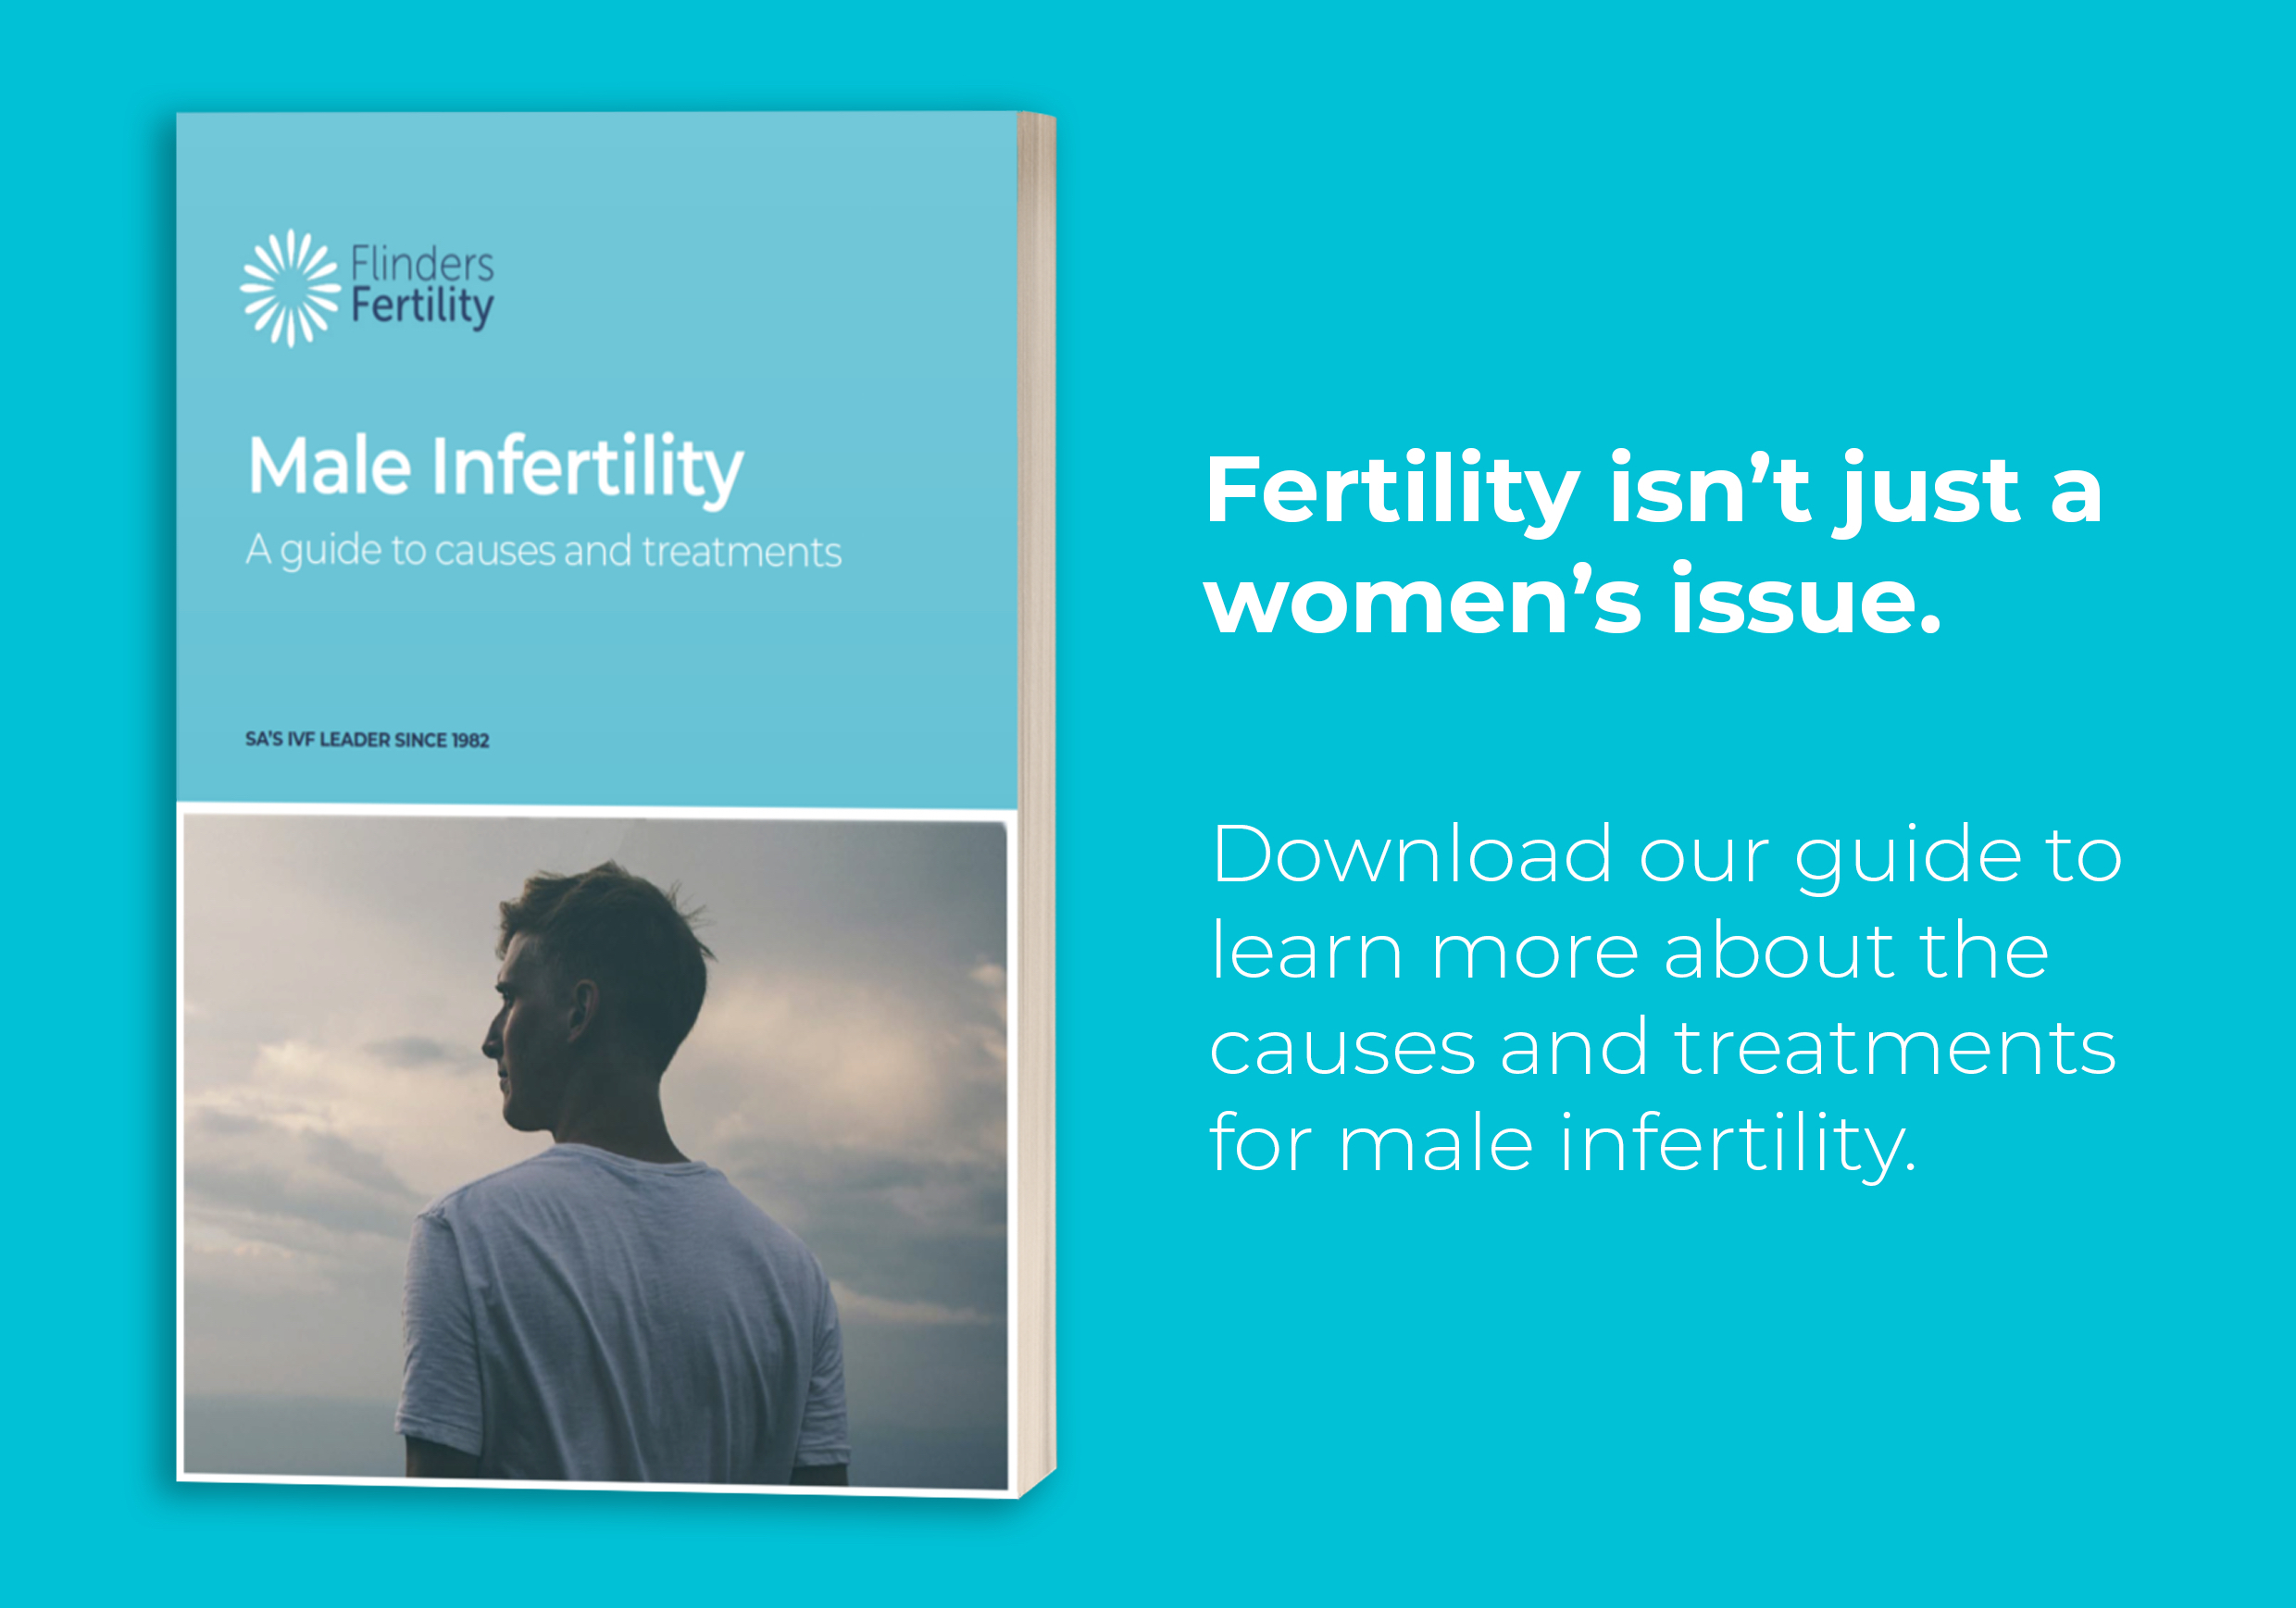 Infertility in men